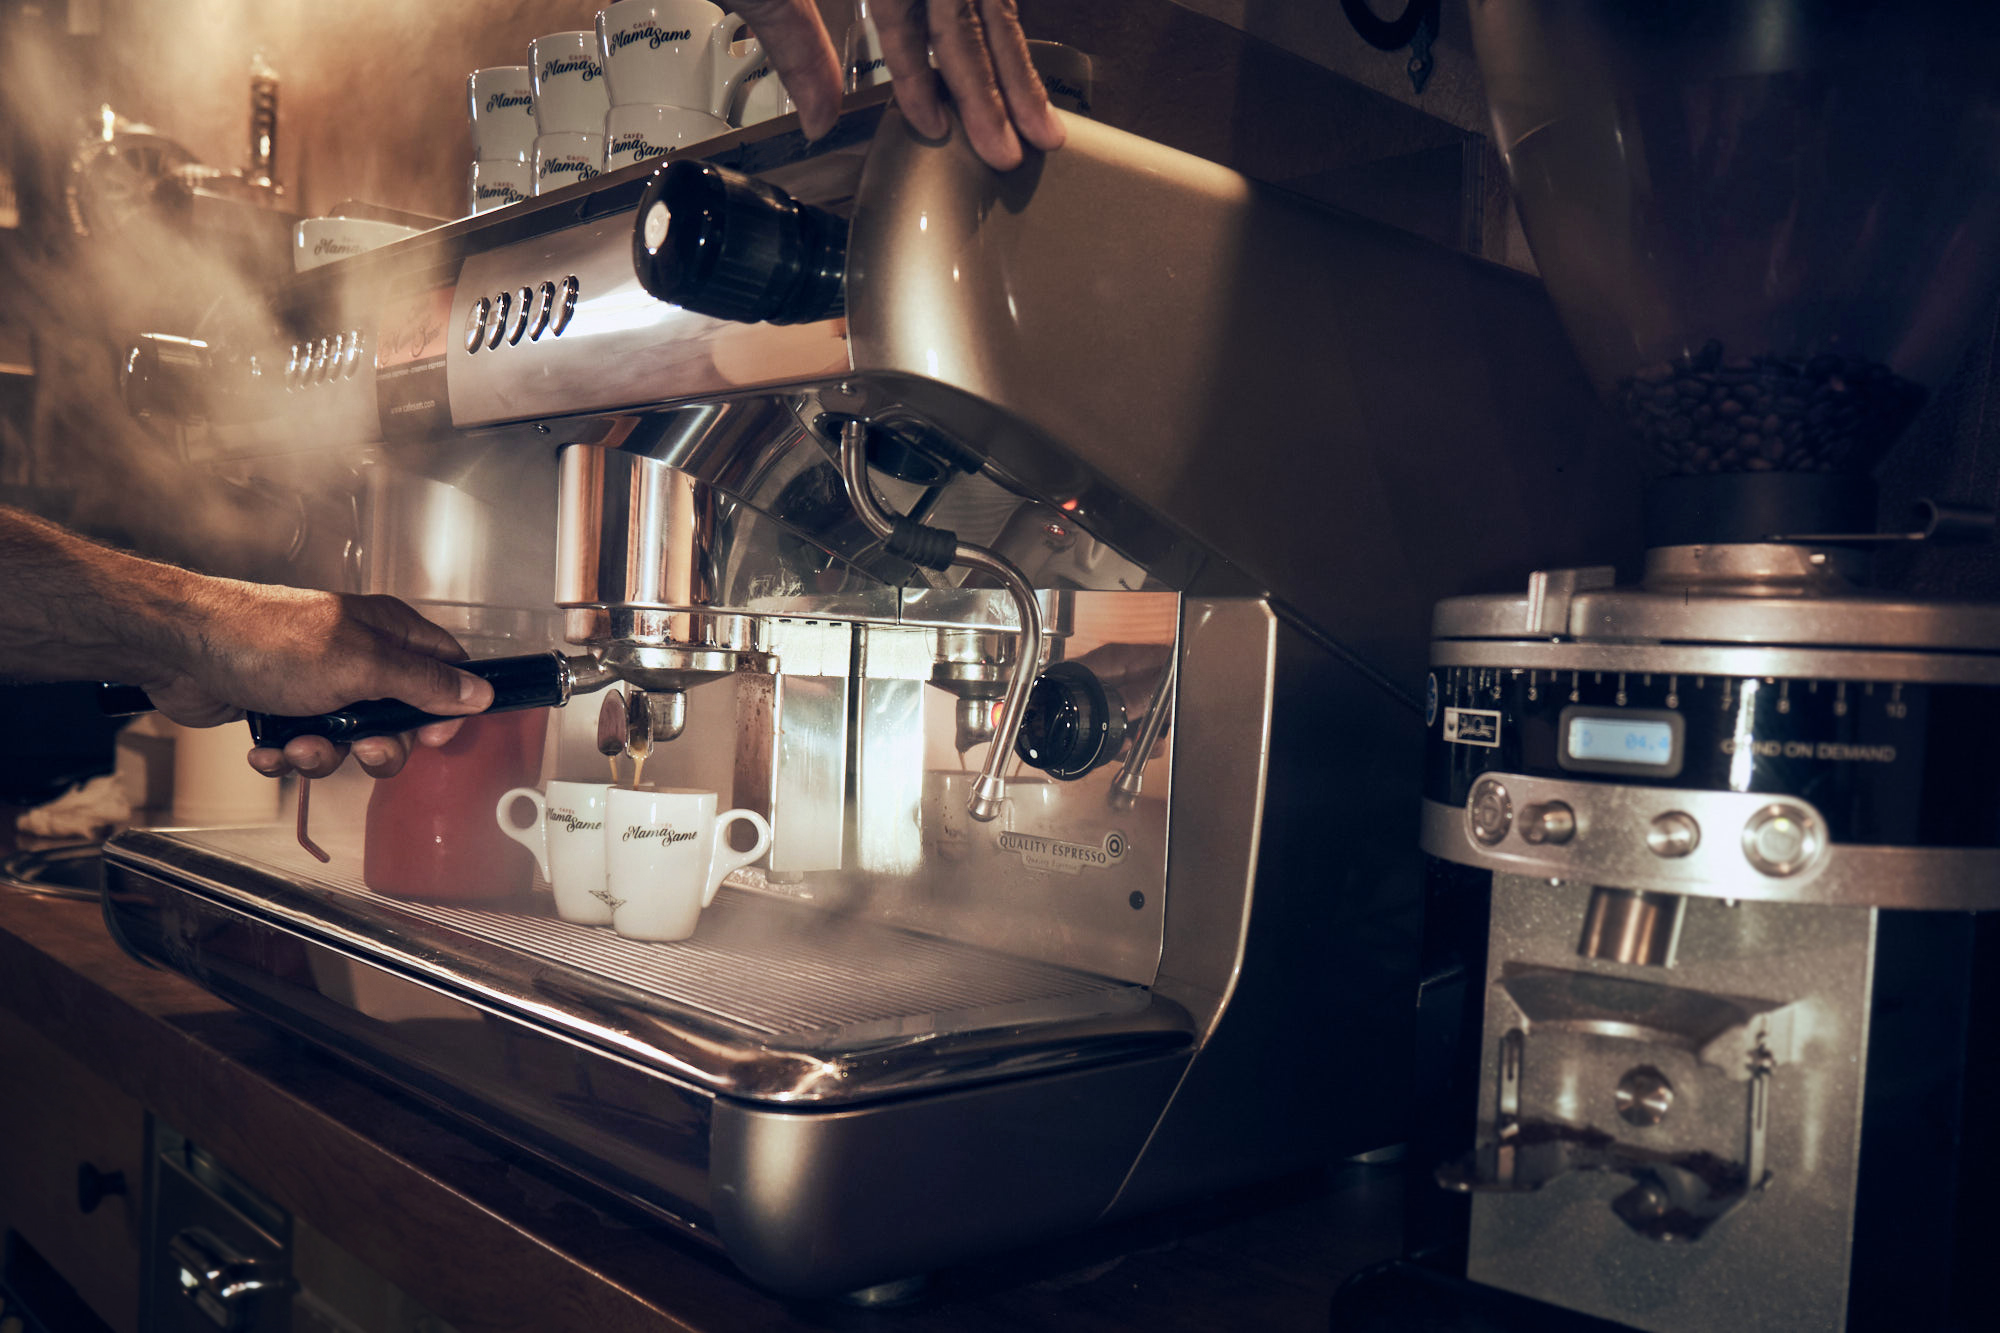 Quelle est la différence entre un espresso, un ristretto et un lungo ? -  Cafés Fraica